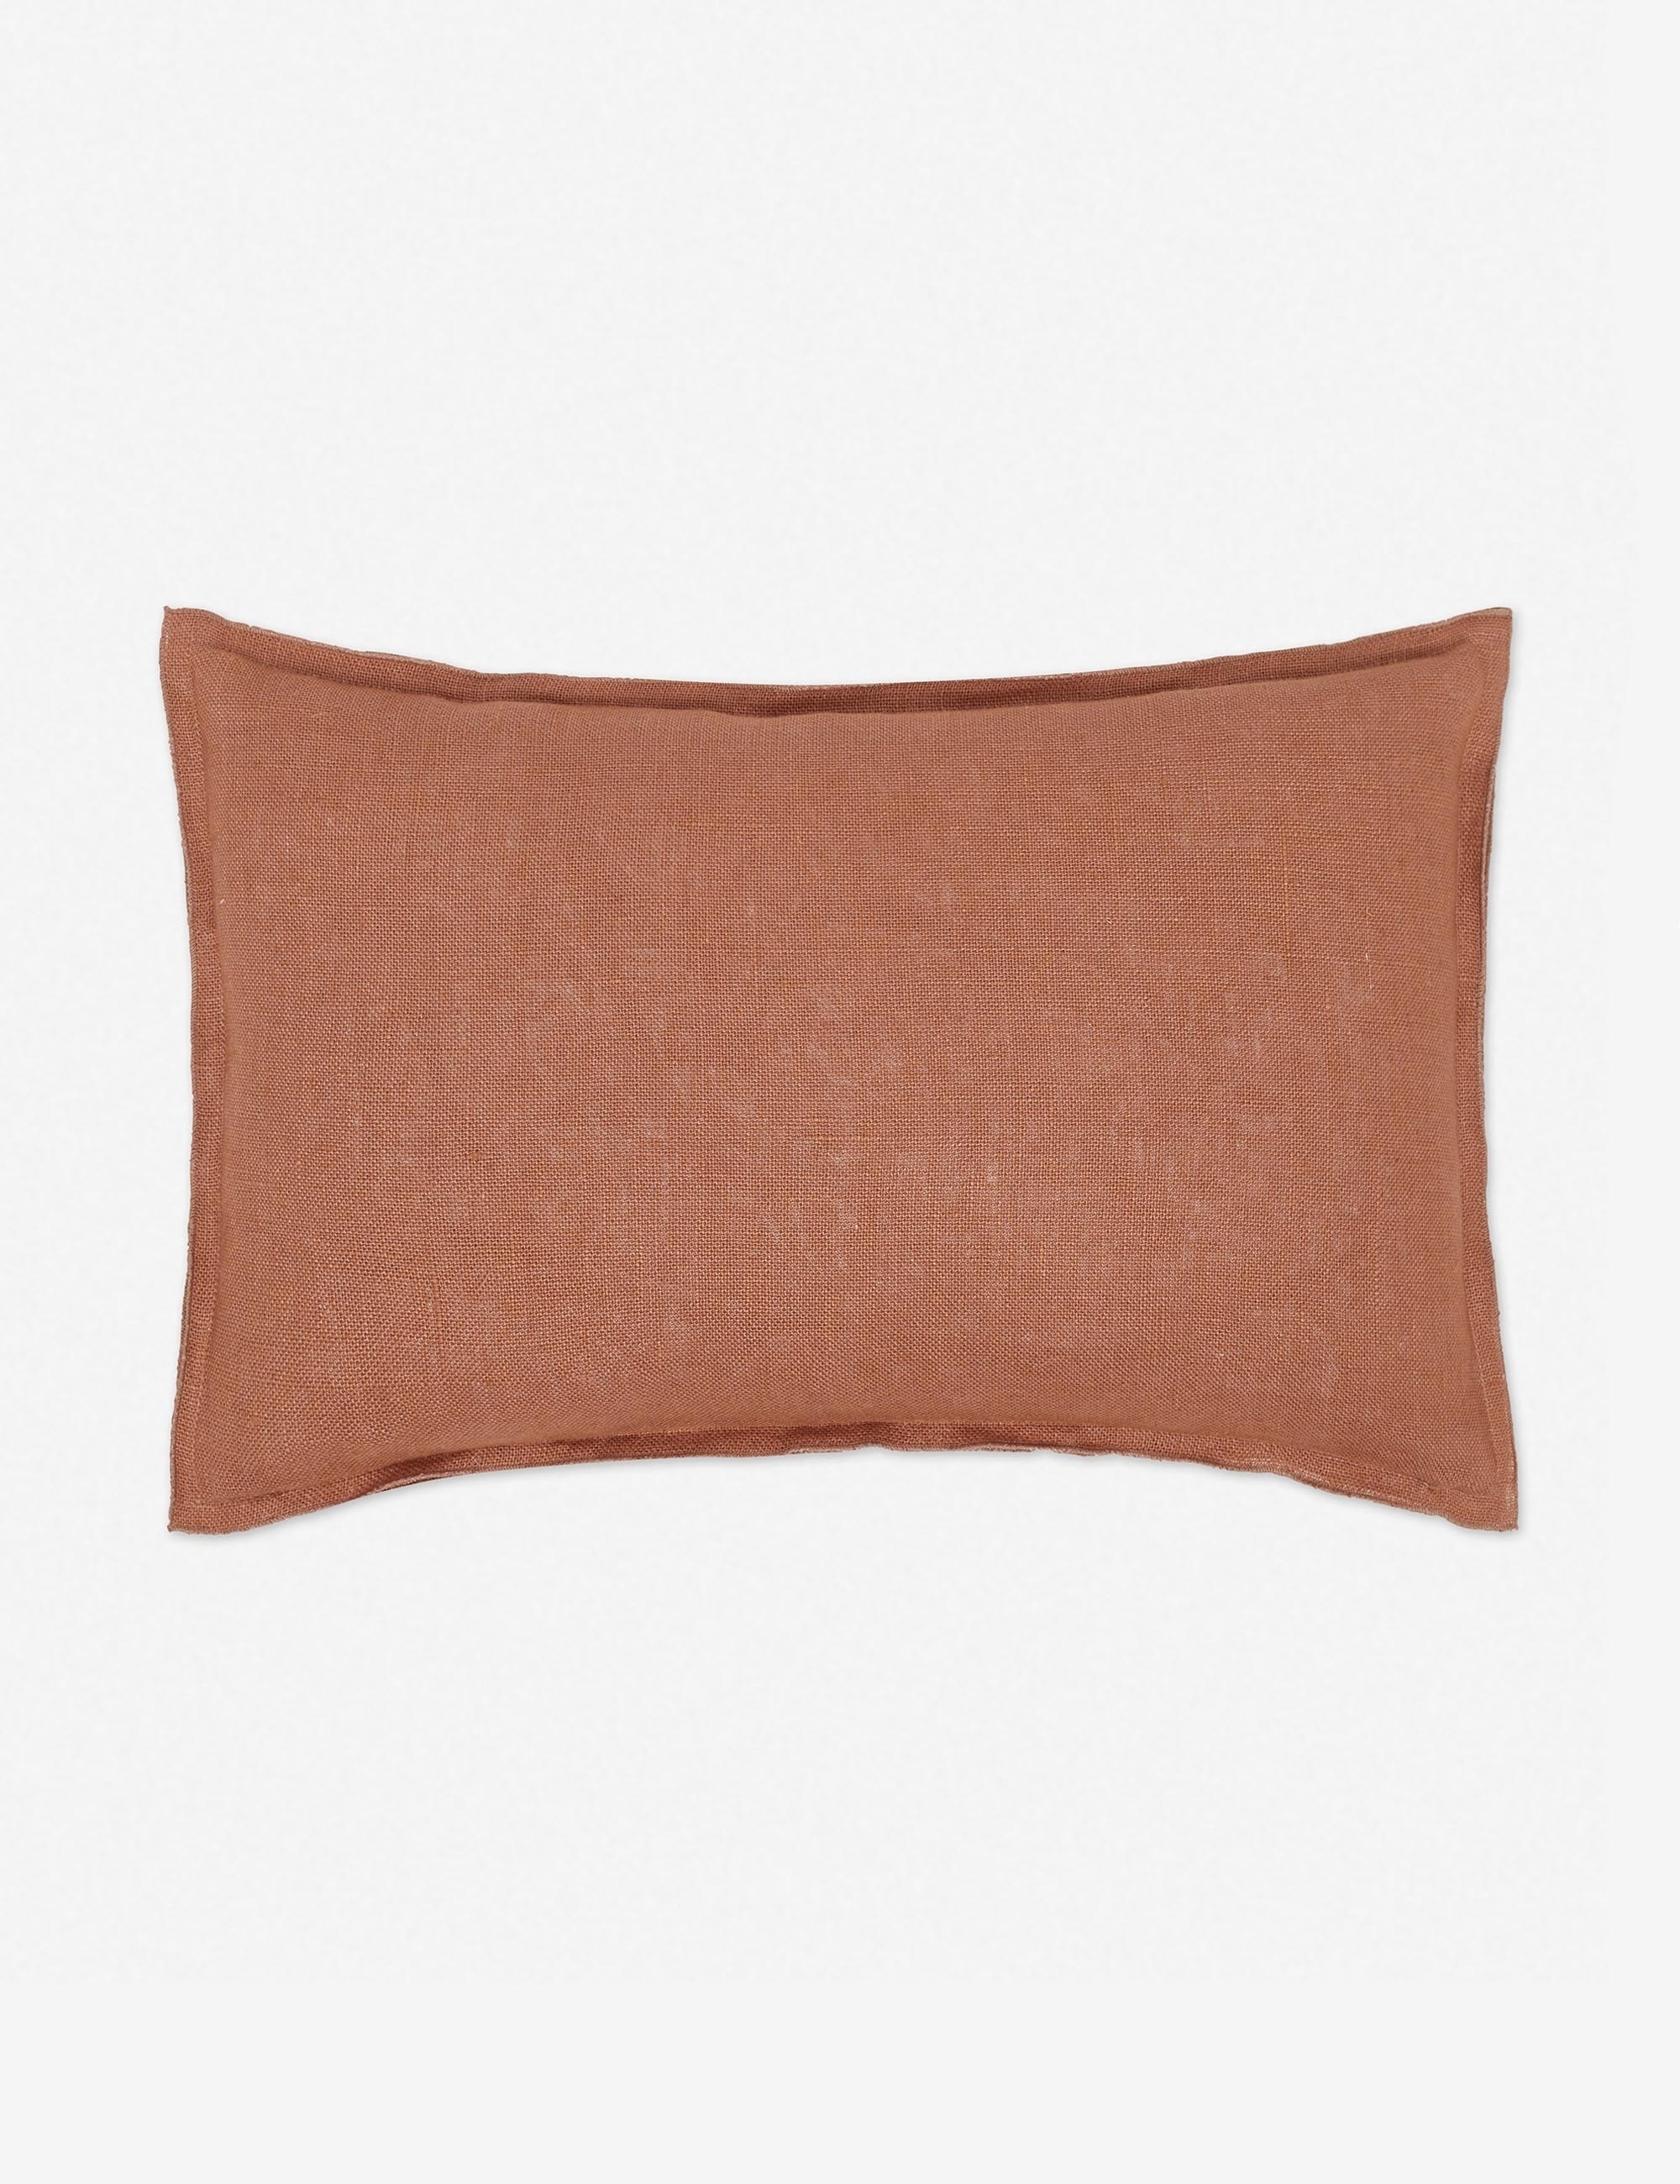 Arlo Linen Lumbar Pillow, Rust - Image 0